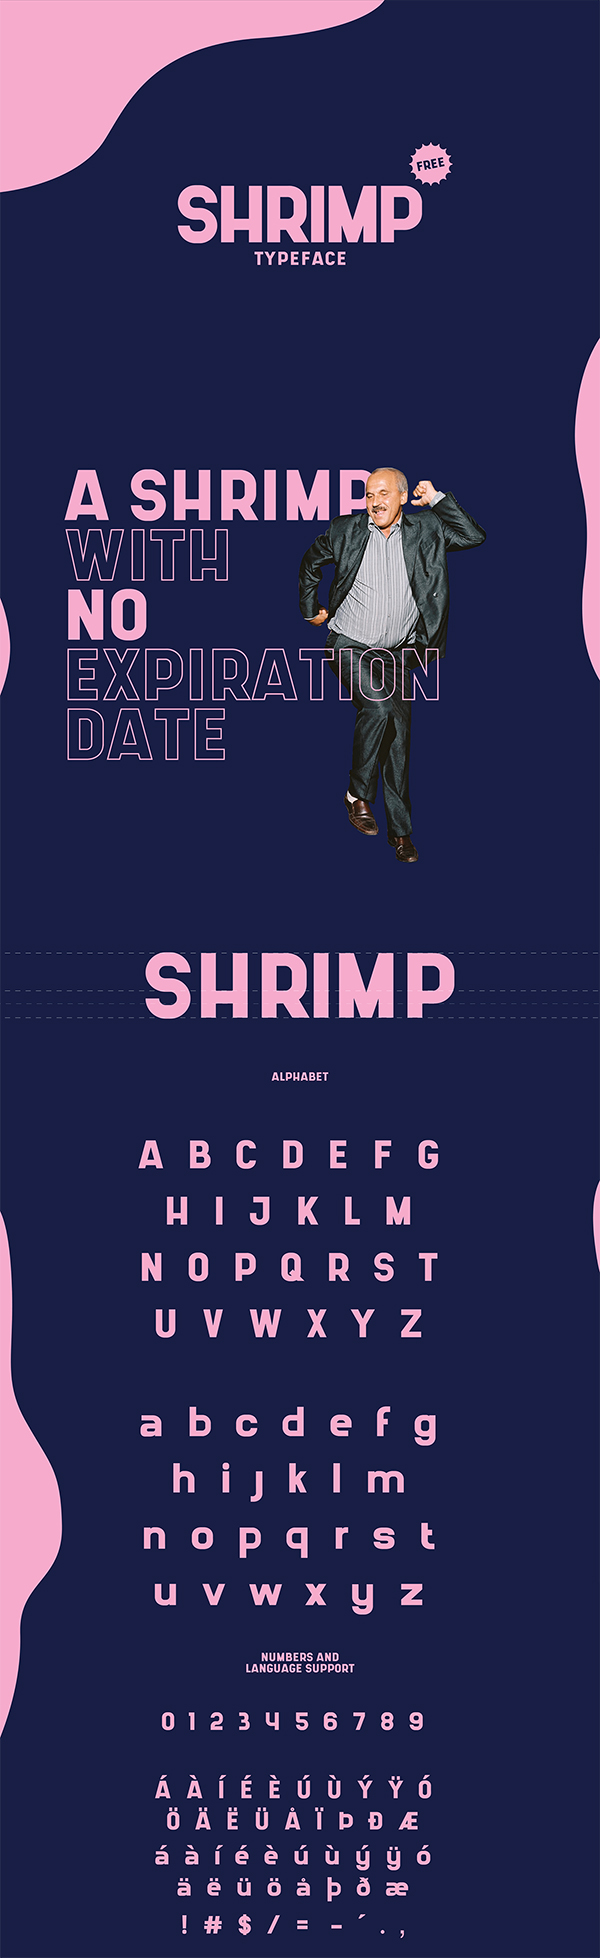 SHRIMP - Free Typeface